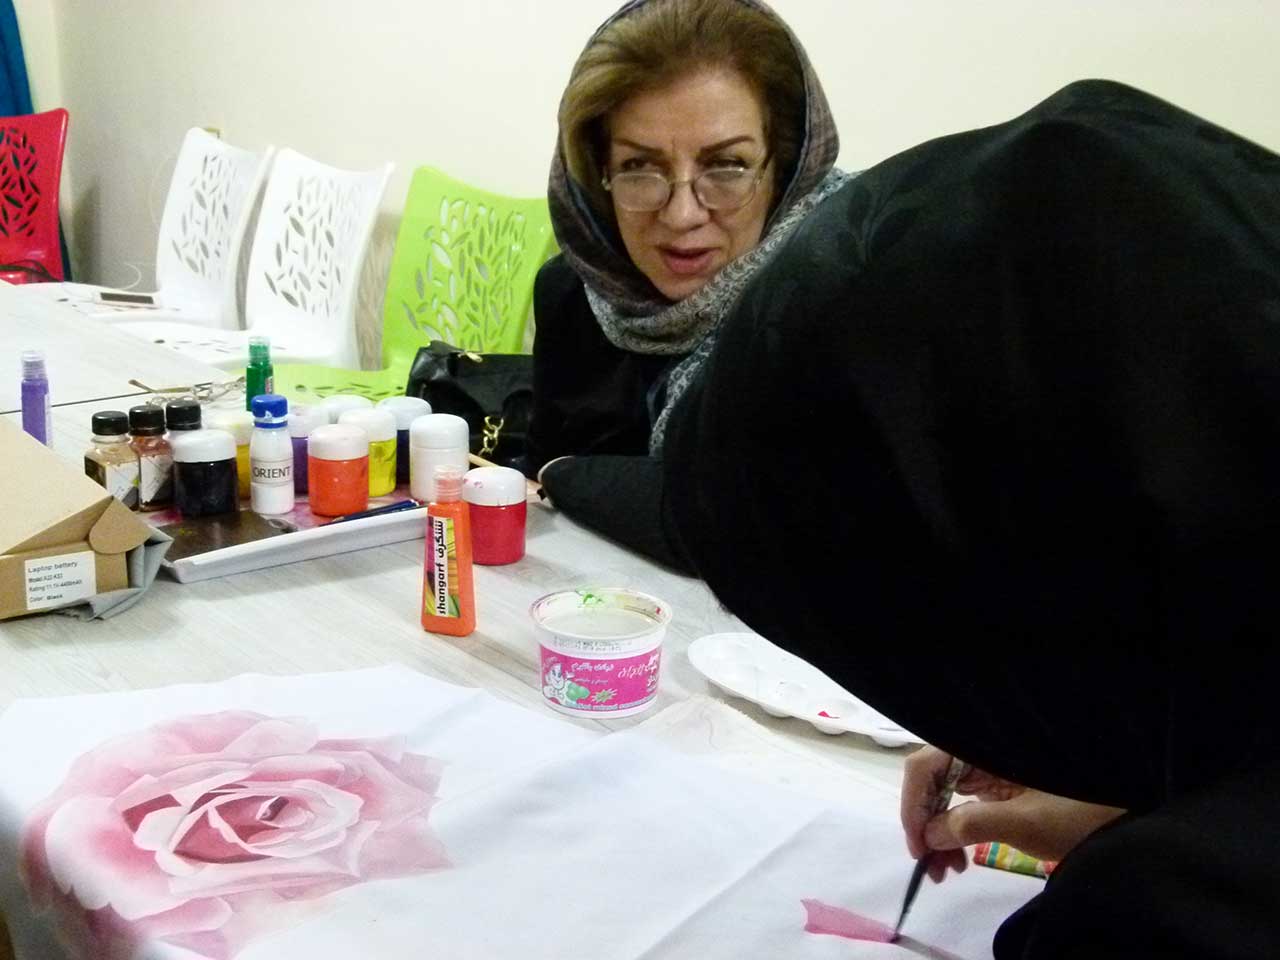 کارگاه نقاشی روی پارچه - وحیده فتحی - فرهنگسرای خانواده قاصدک